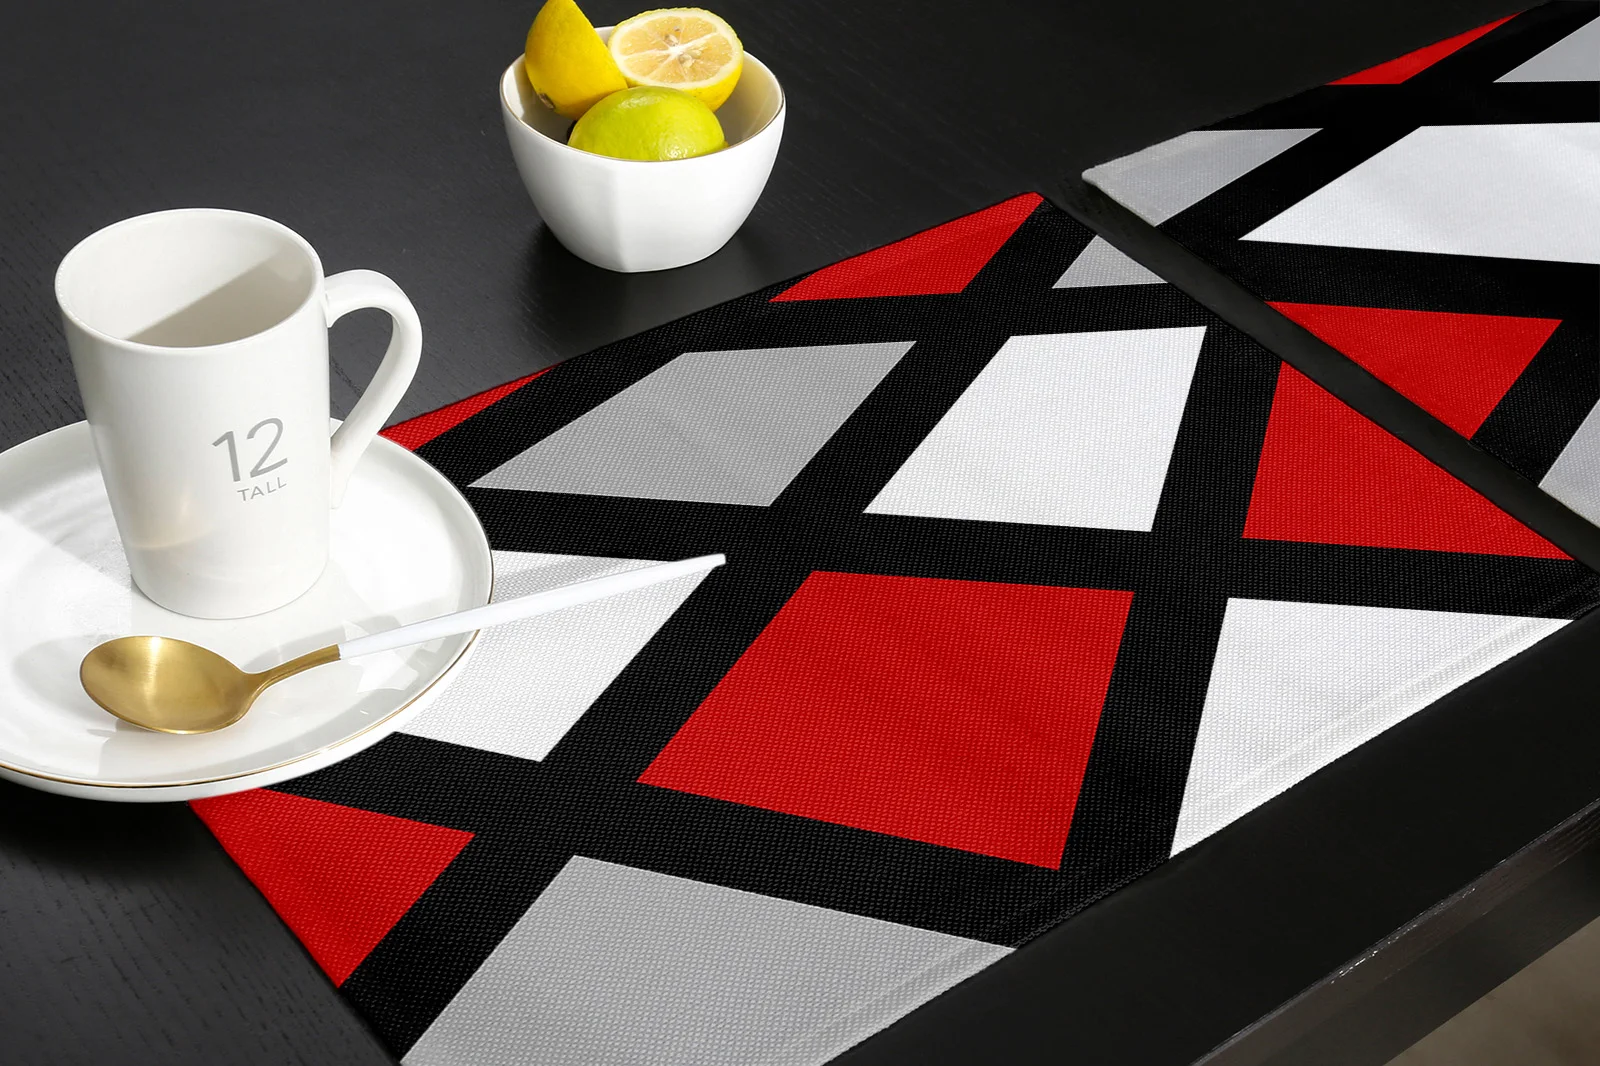 Красный Черный Серый Геометрический Квадратный коврик для обеденного стола Коврики для посуды Коврик для кухонной посуды Коврик 4/6 шт. Коврик для стола Украшение дома